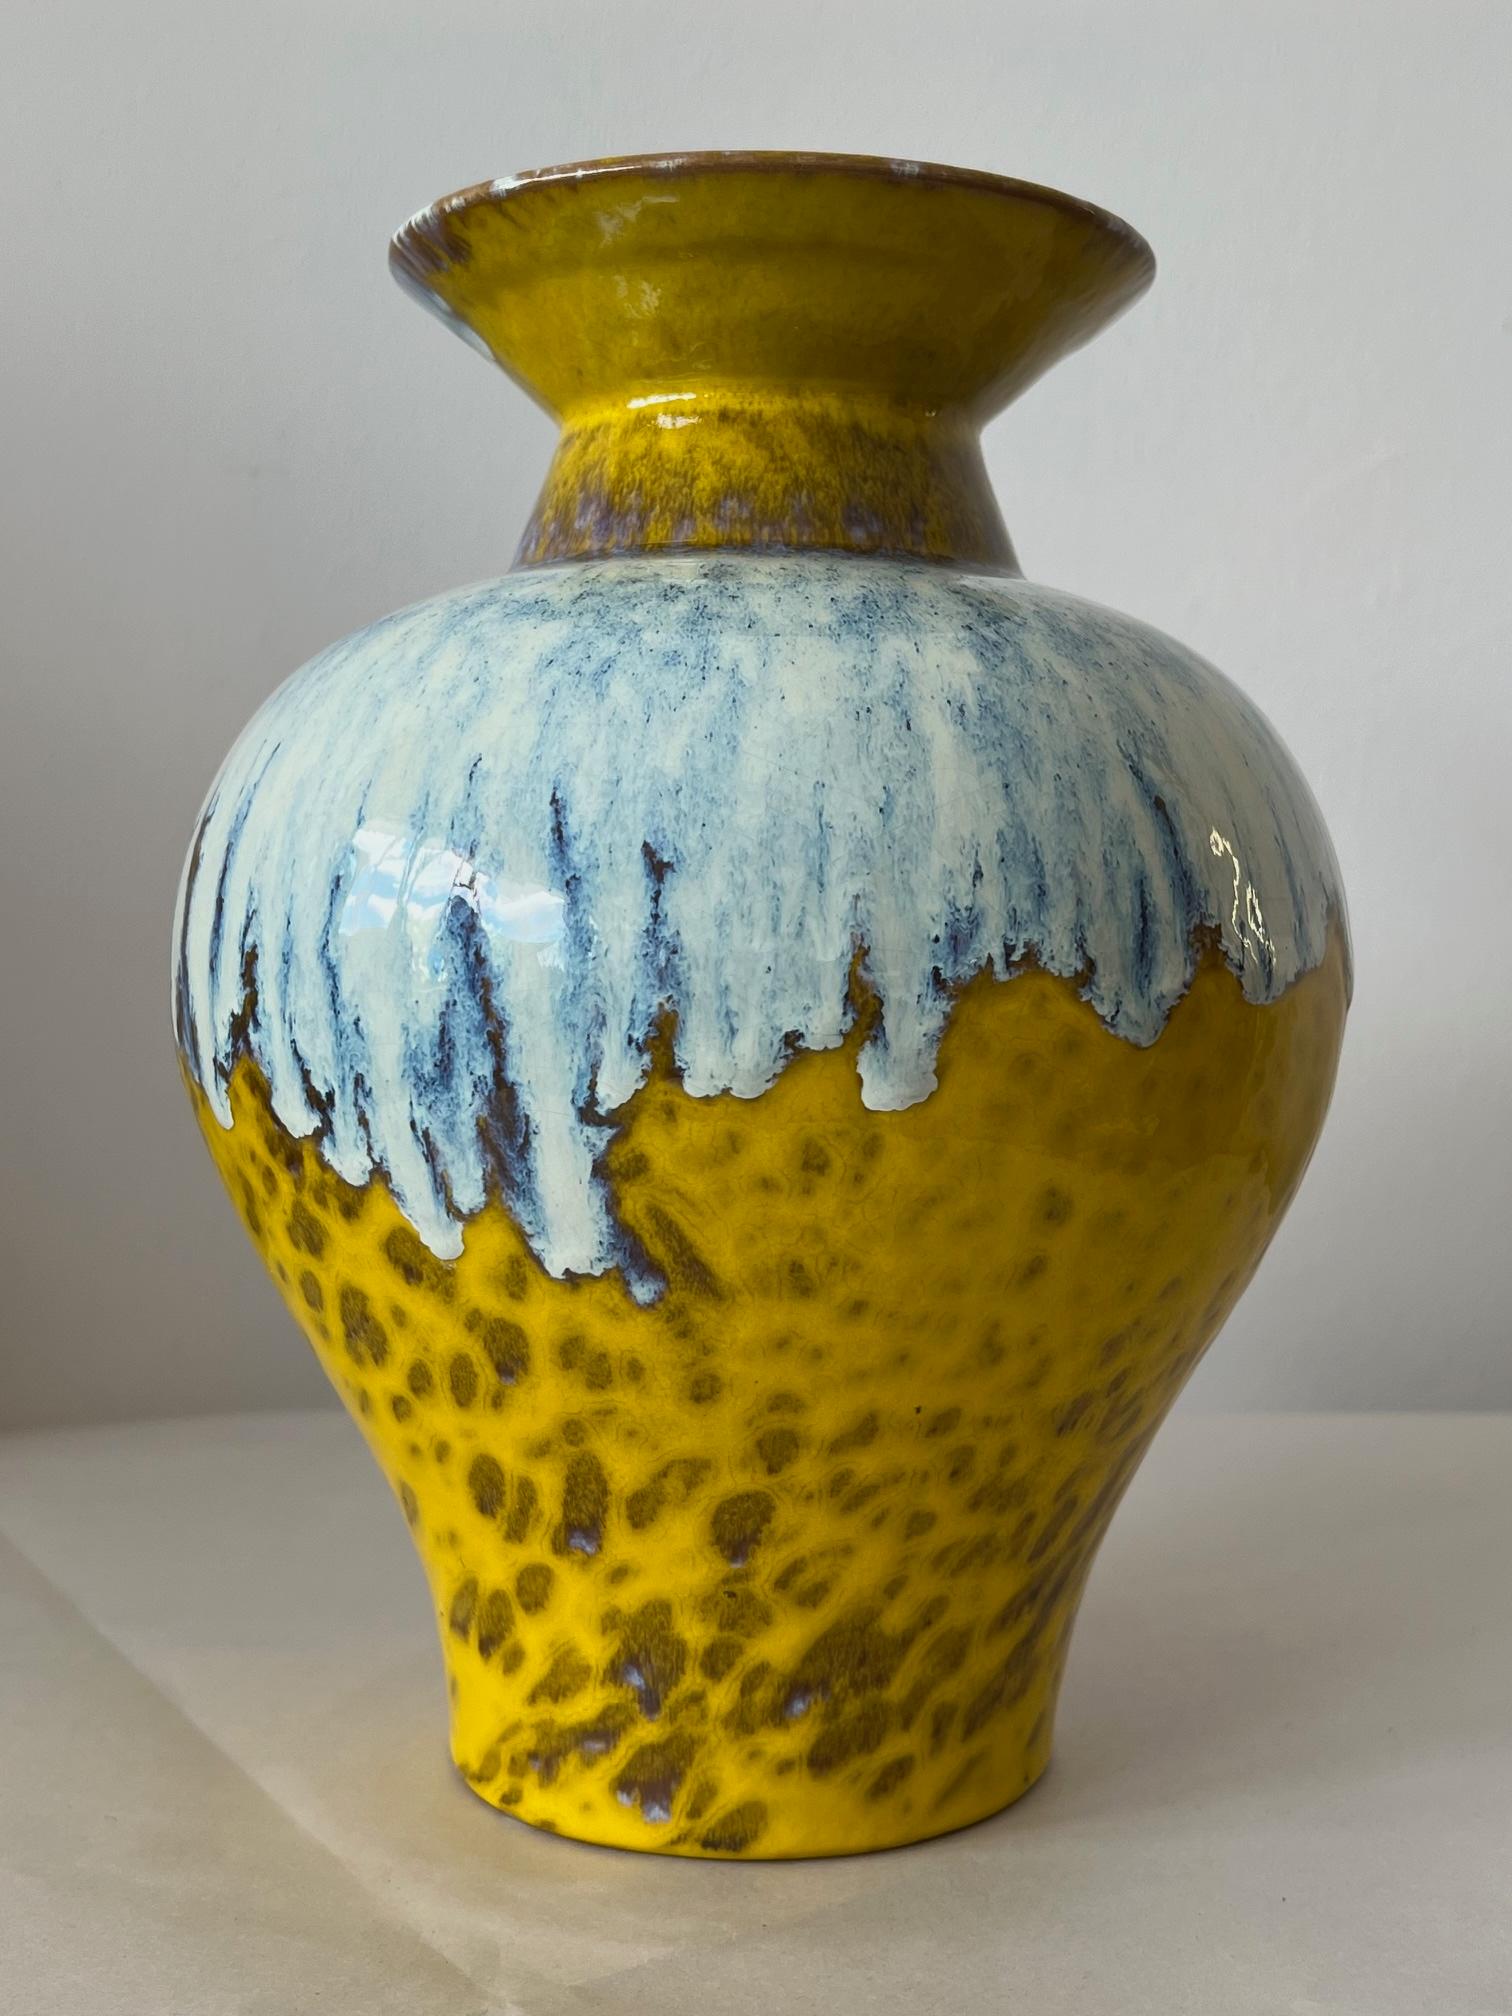 Un beau et substantiel vase Raymor en émaux mixtes. Jaune, brun et bleu éclatants. Fabriqué en Italie vers les années 1970.